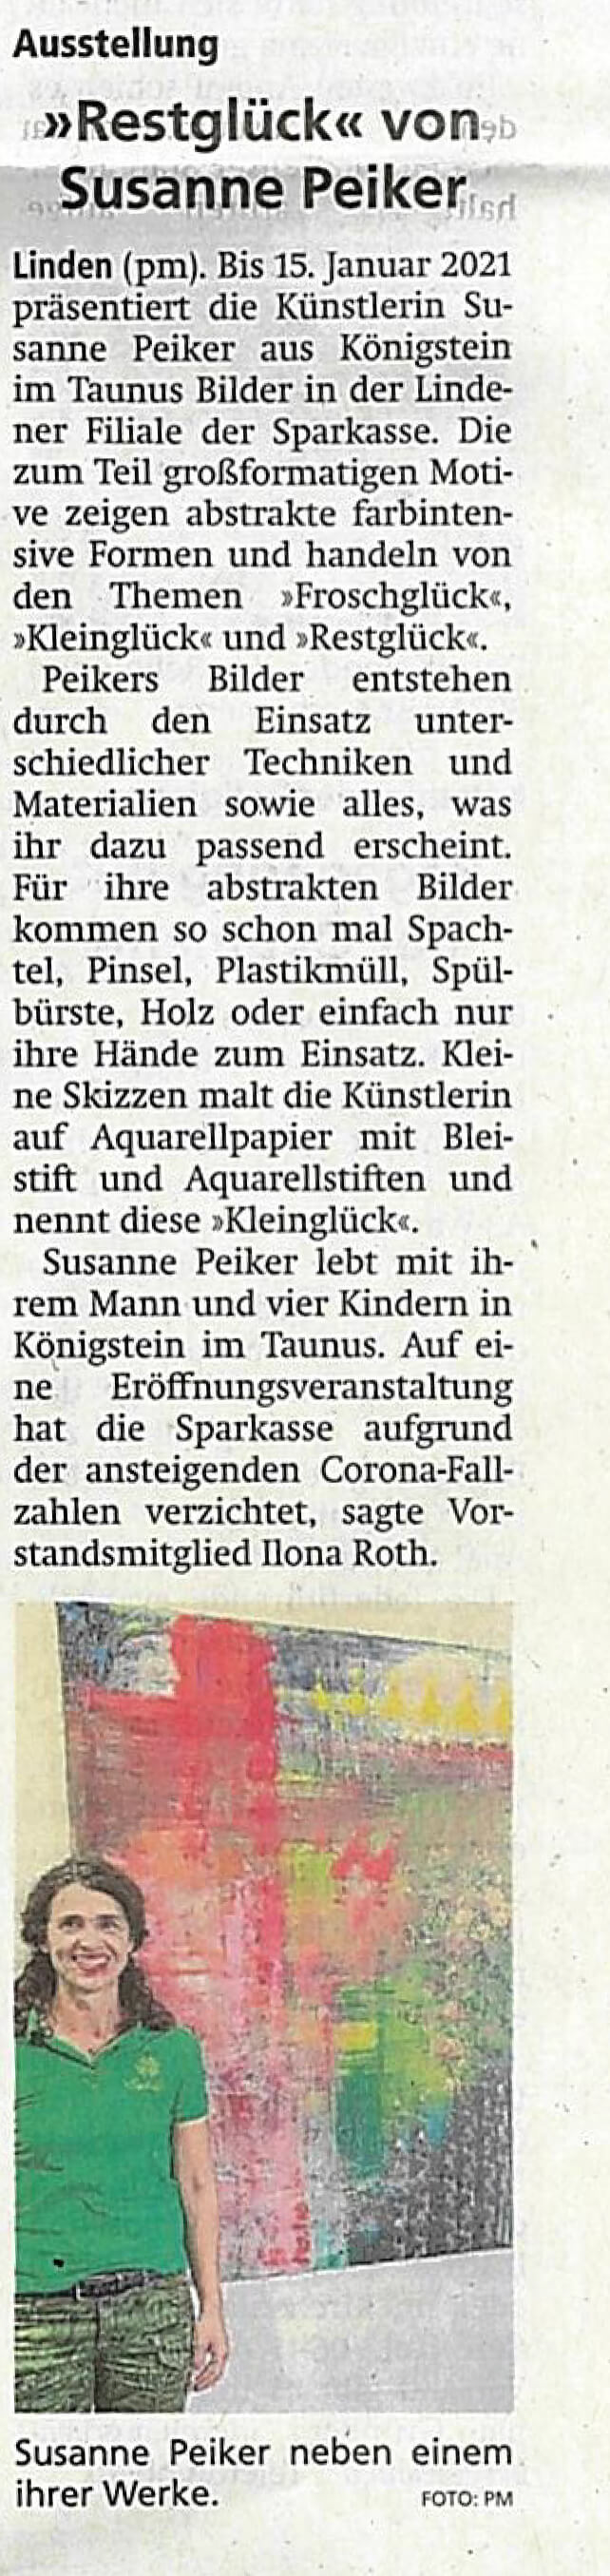 Presseartikel 04.11.2020 Gießener Anzeiger Susanne Peilker